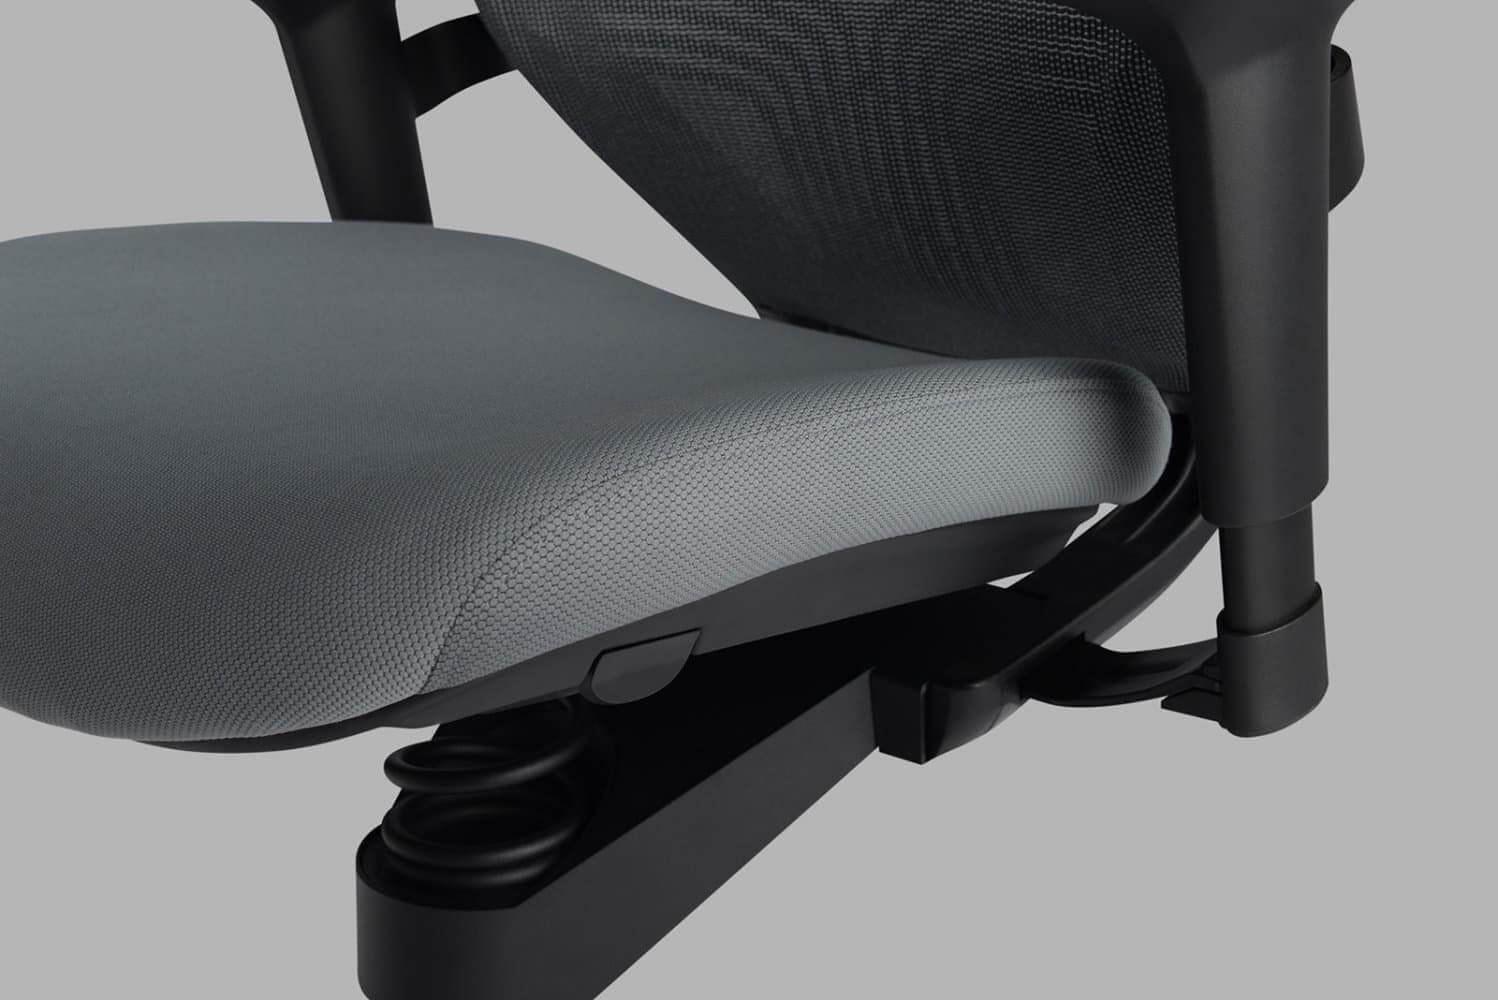 Adaptic Xtreme kancelářská zdravotní židle